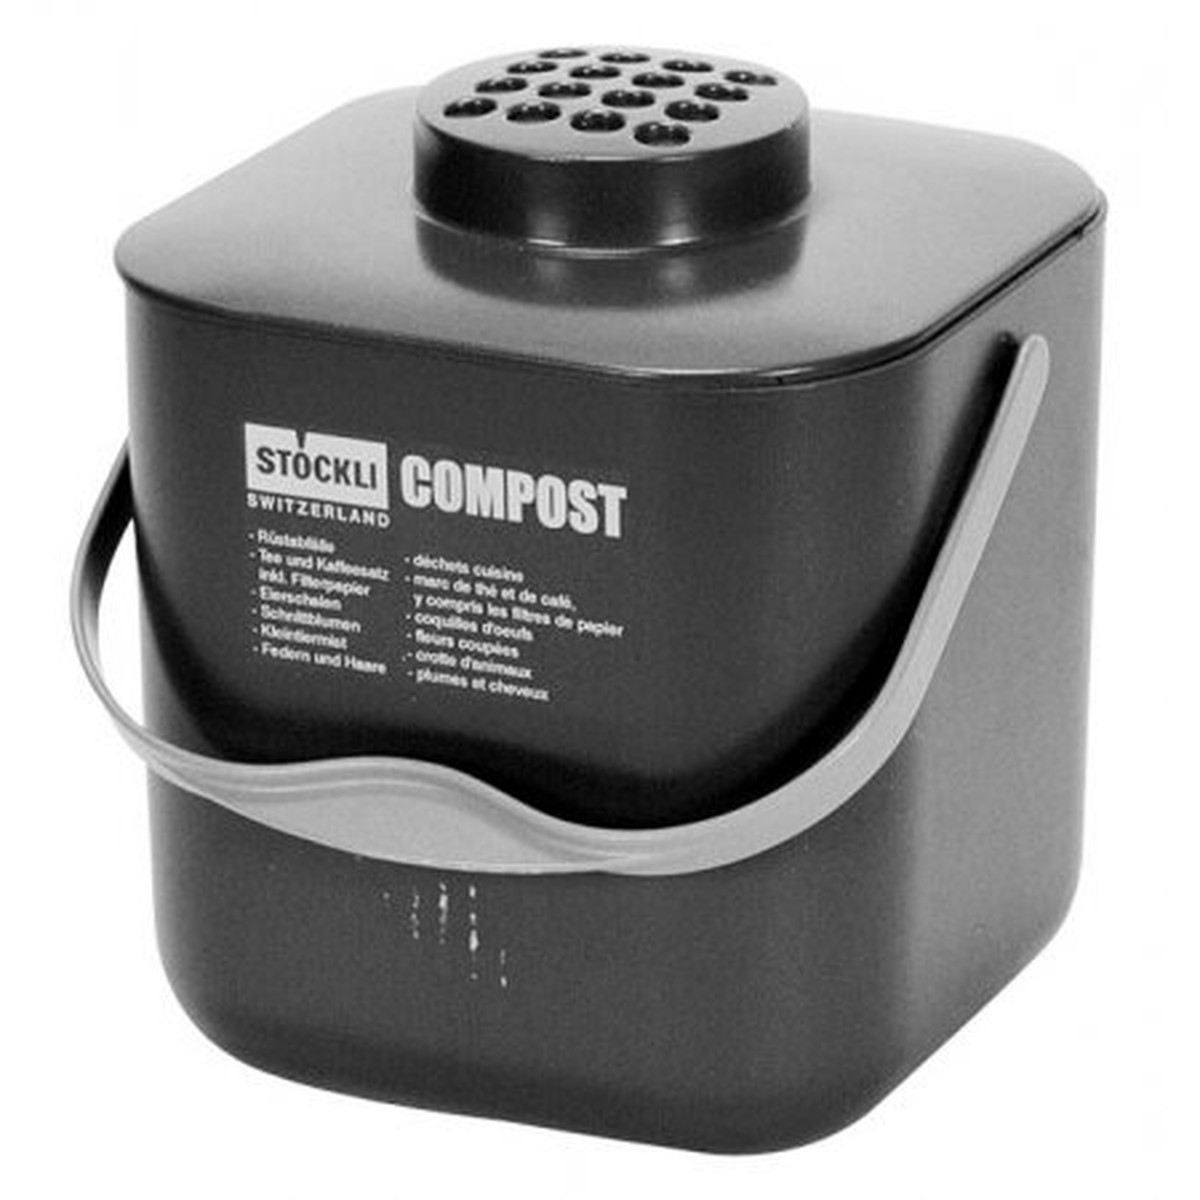   Bac compost POT avec filtre, vert  18.5x18.5x22 cm  5 litres